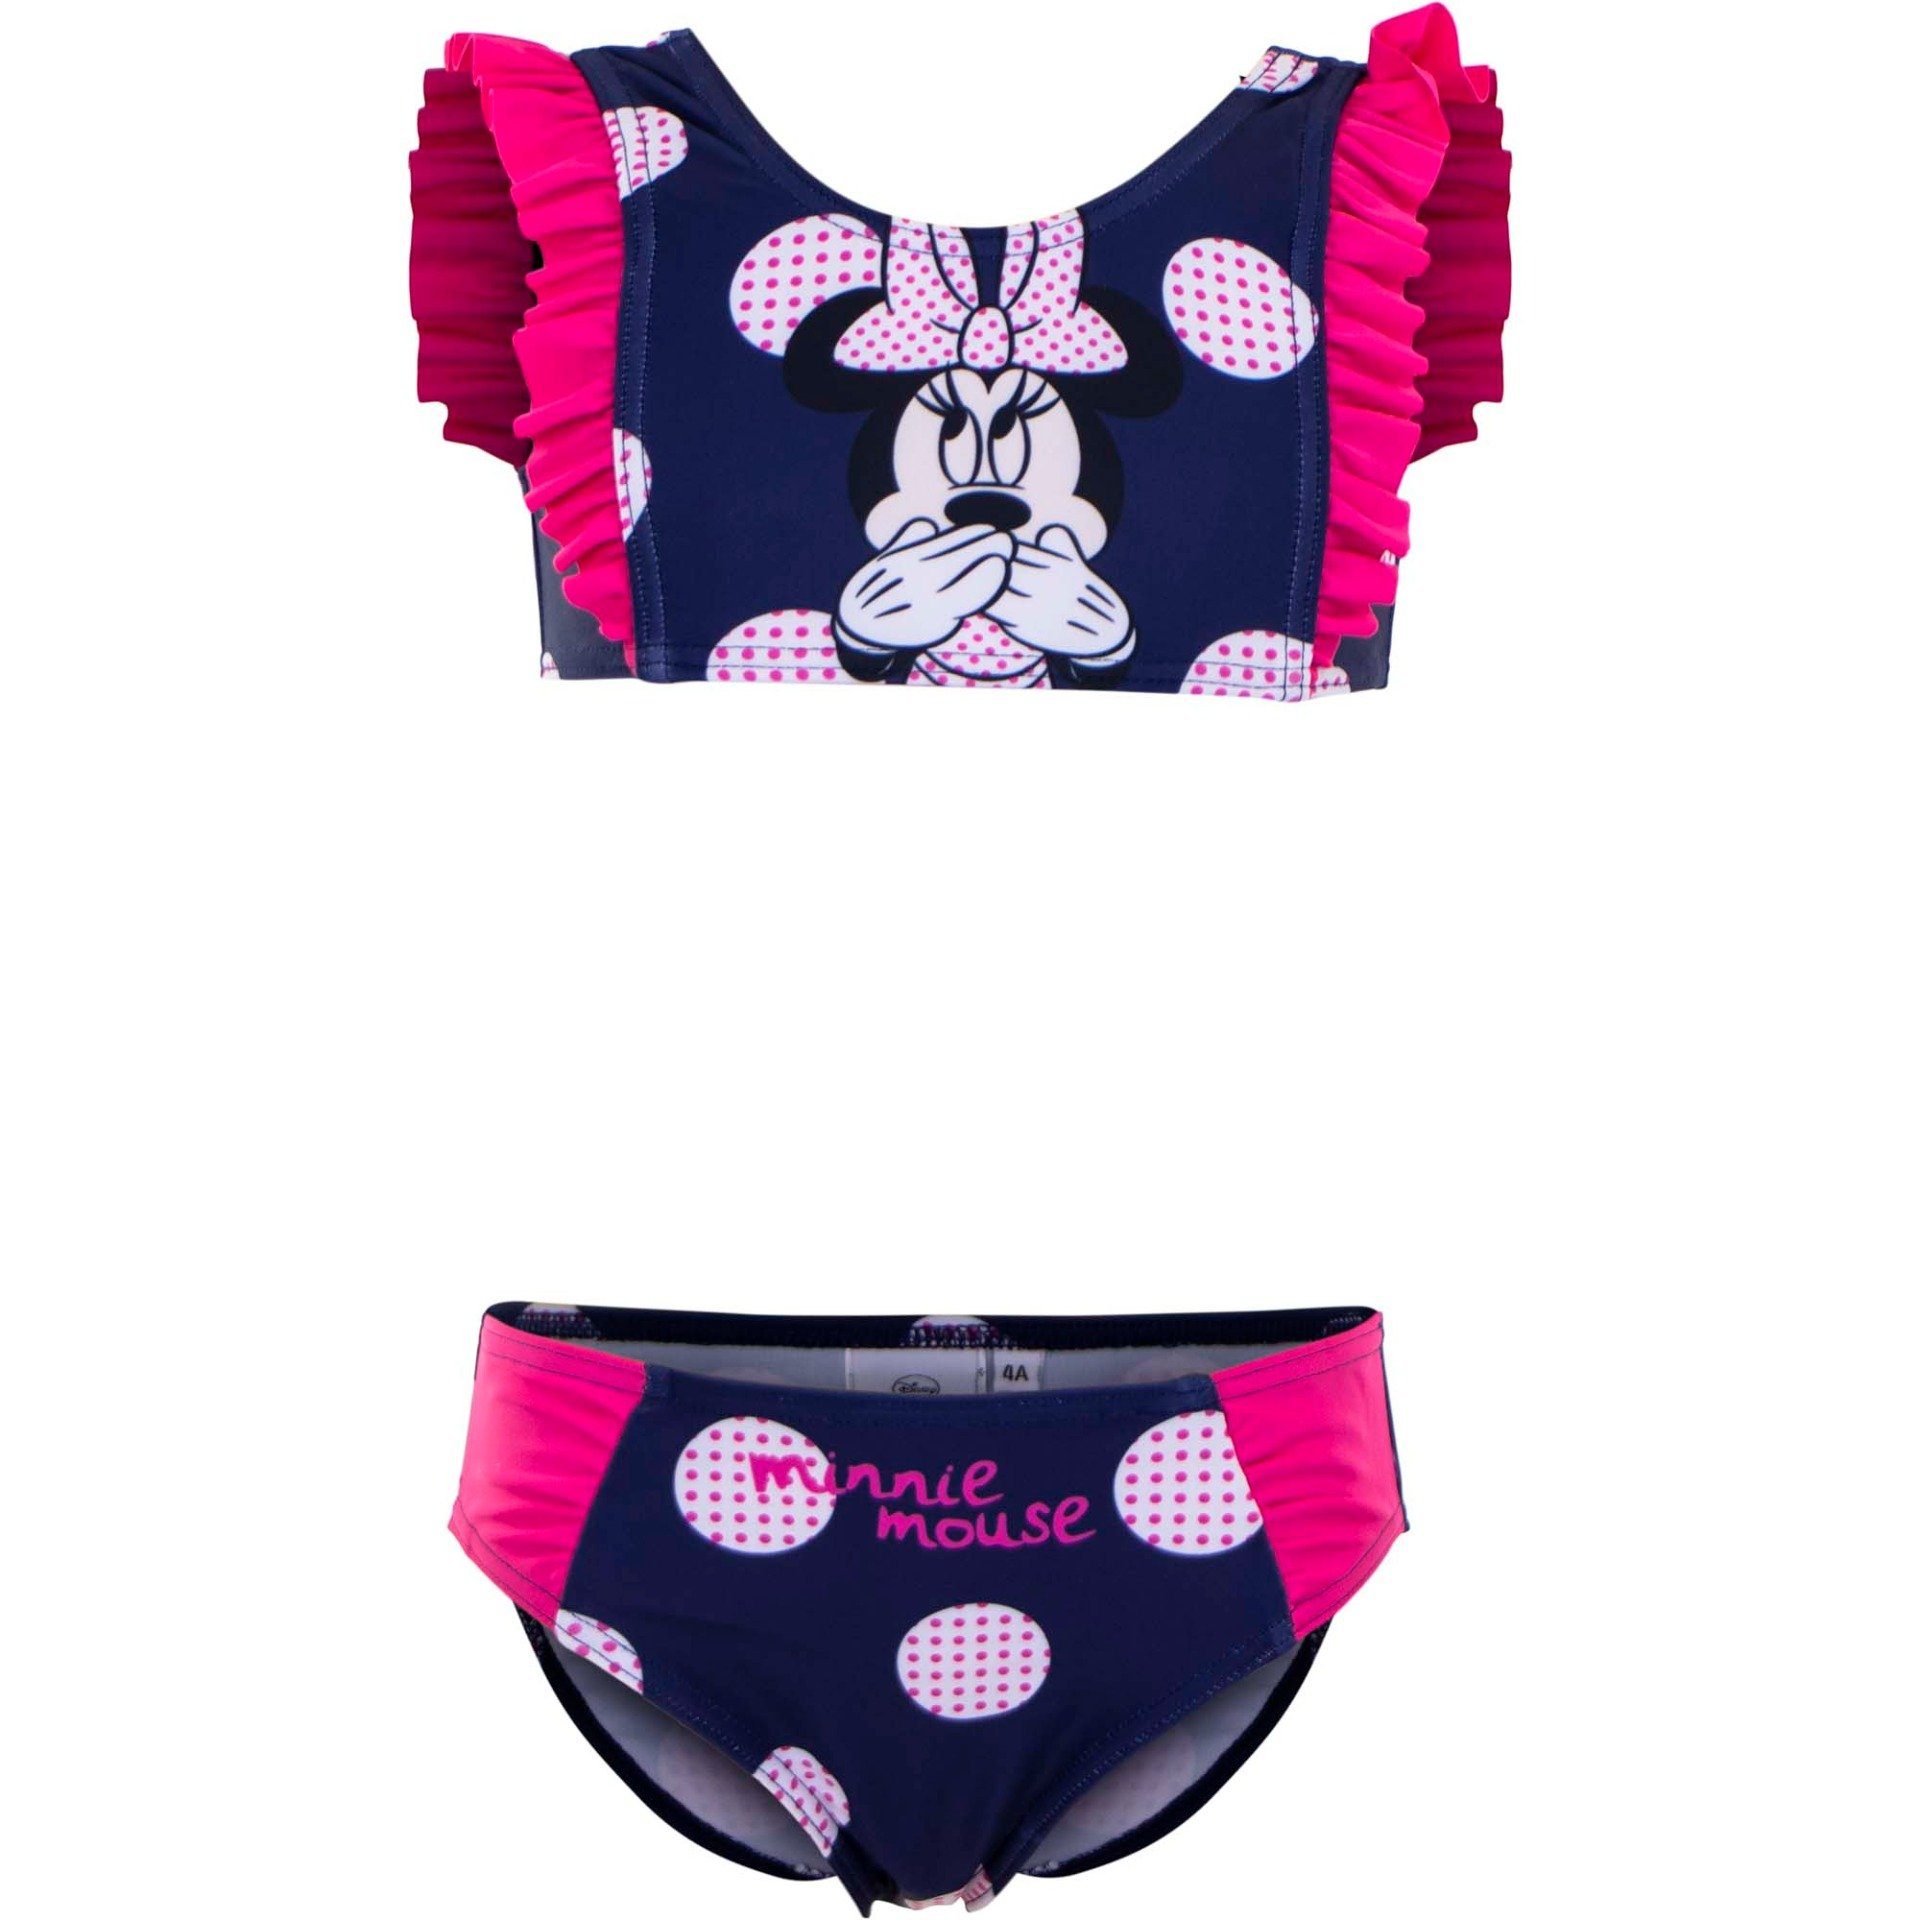 Disney Minnie Mouse Badeanzug »MINNIE MOUSE Swim Set Punkte Mädchen Bikini  rosa und dunkelblau 2 Teiler Kinder Gr. 98 104 116 128 ca 3 4 5 6 8 Jahre«  online kaufen | OTTO